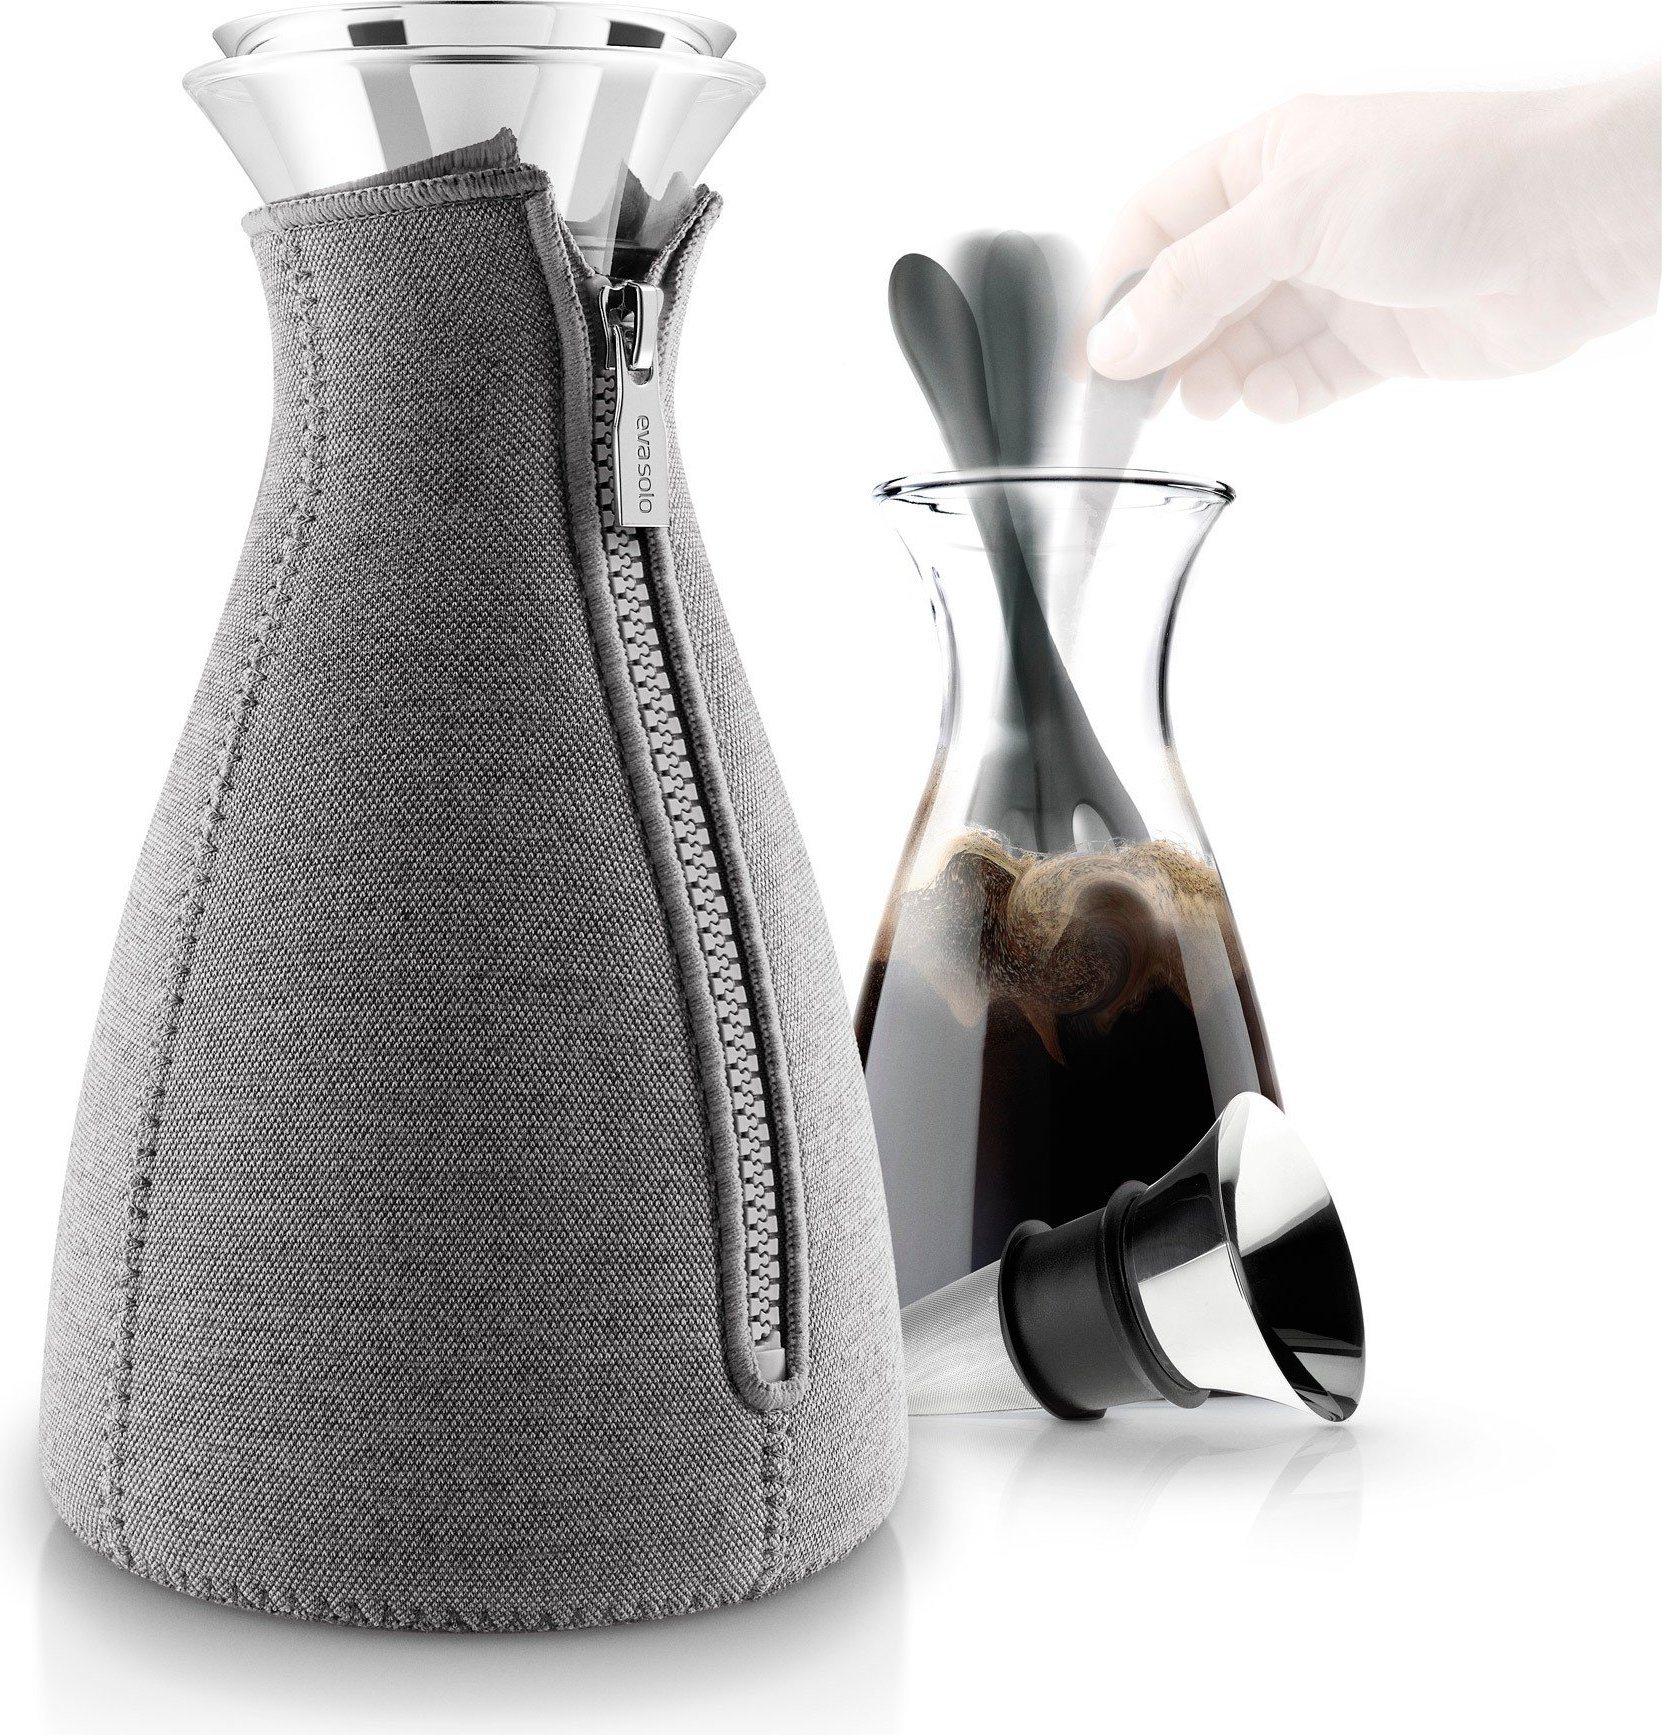 Cafesolo Coffee maker - Eva Solo 567592, tools design